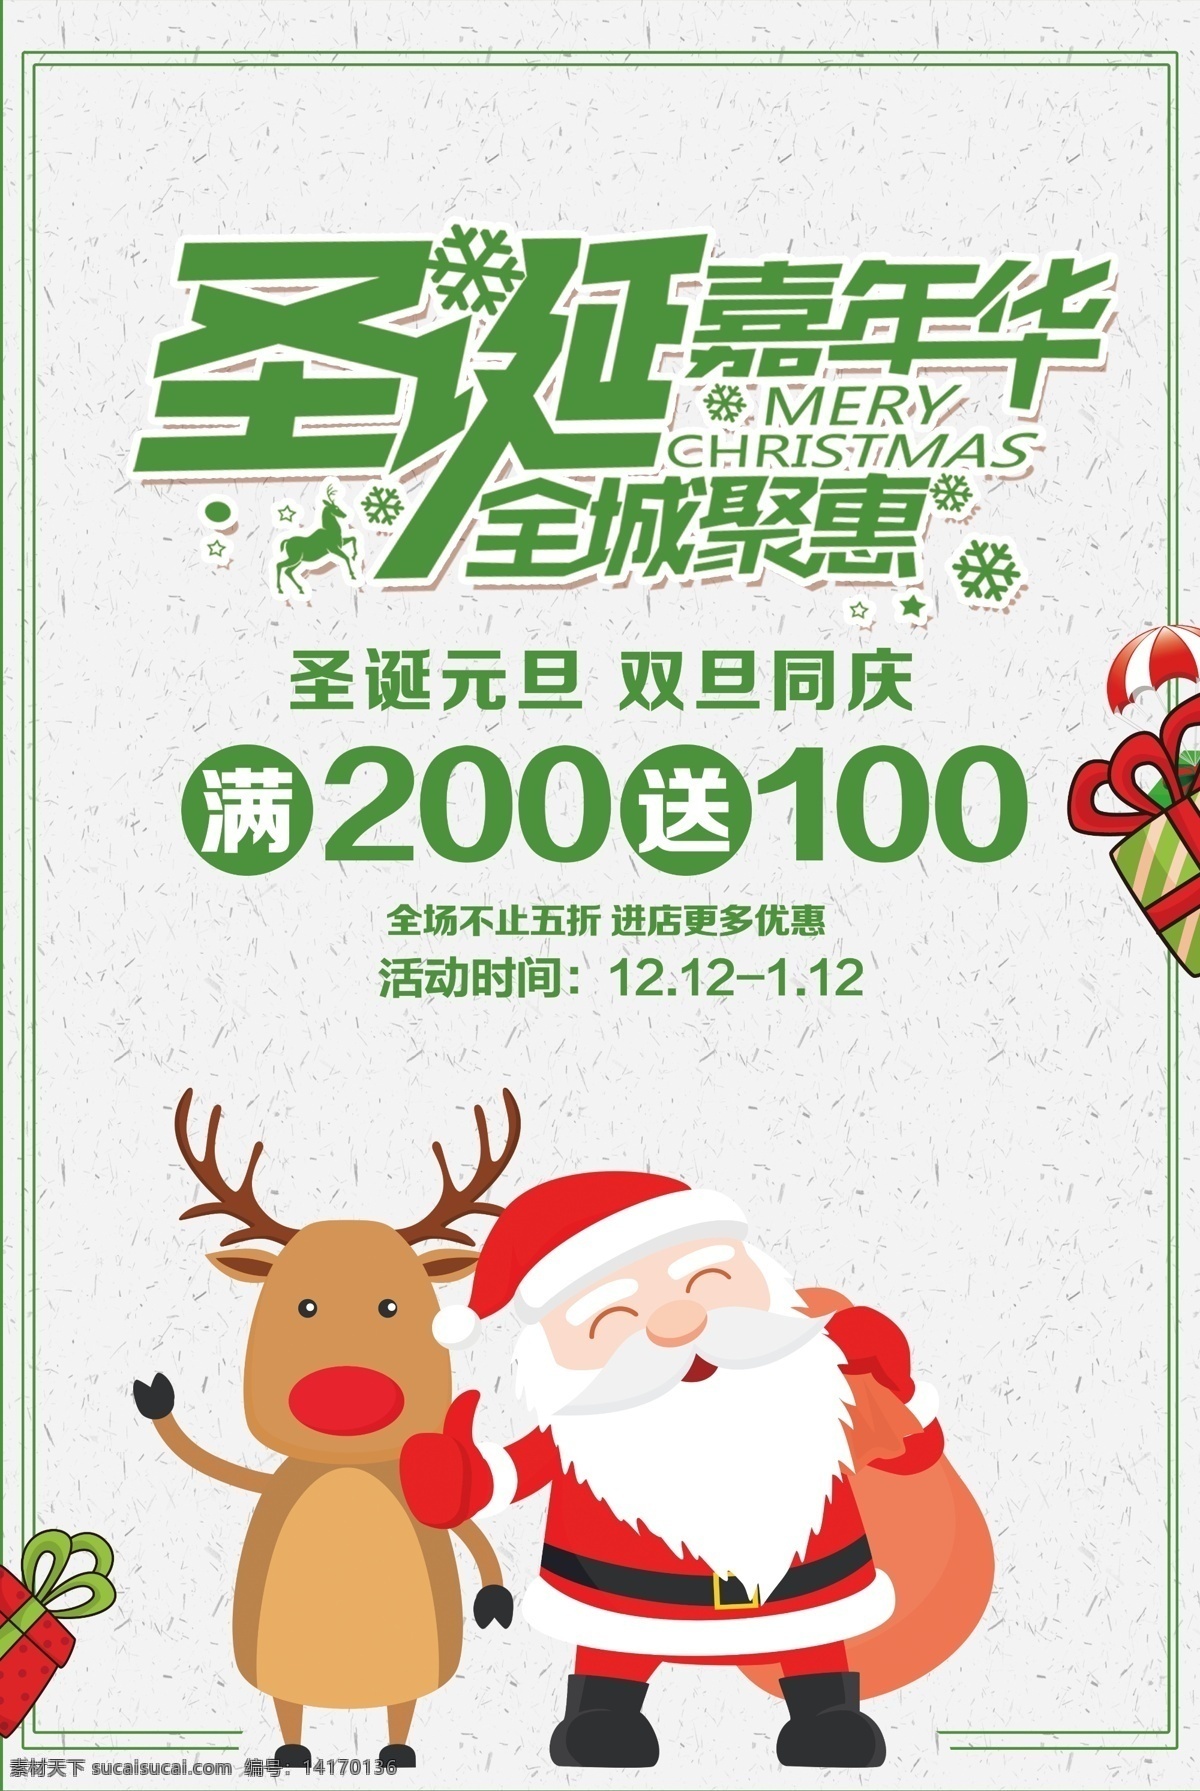 绿色 圣诞 嘉年华 促销 海报 平安夜 节日 圣诞老人 圣诞节快乐 圣诞嘉年华